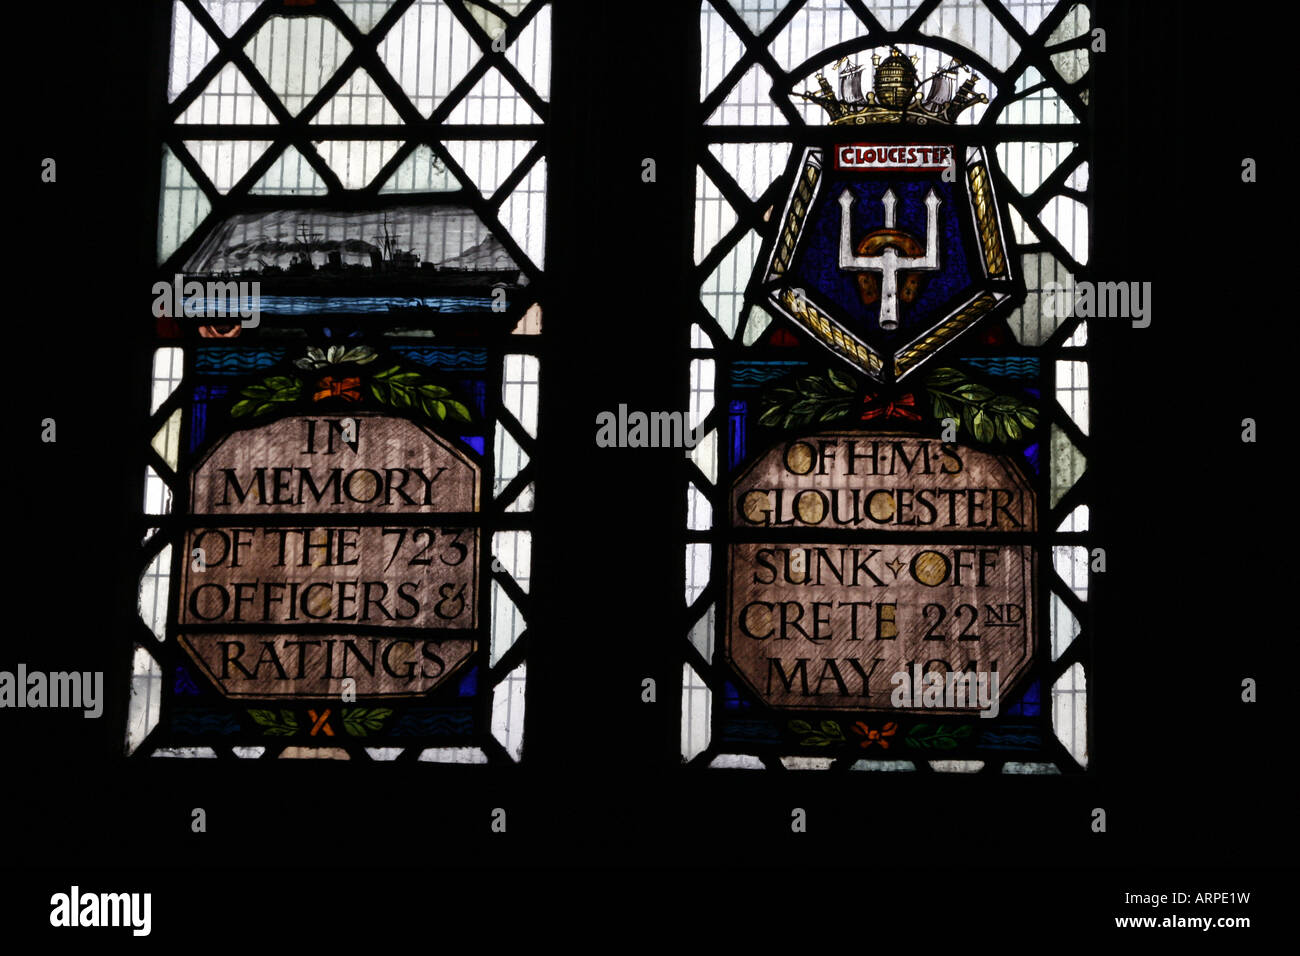 Vitrail, la cathédrale de Gloucester, Angleterre Banque D'Images